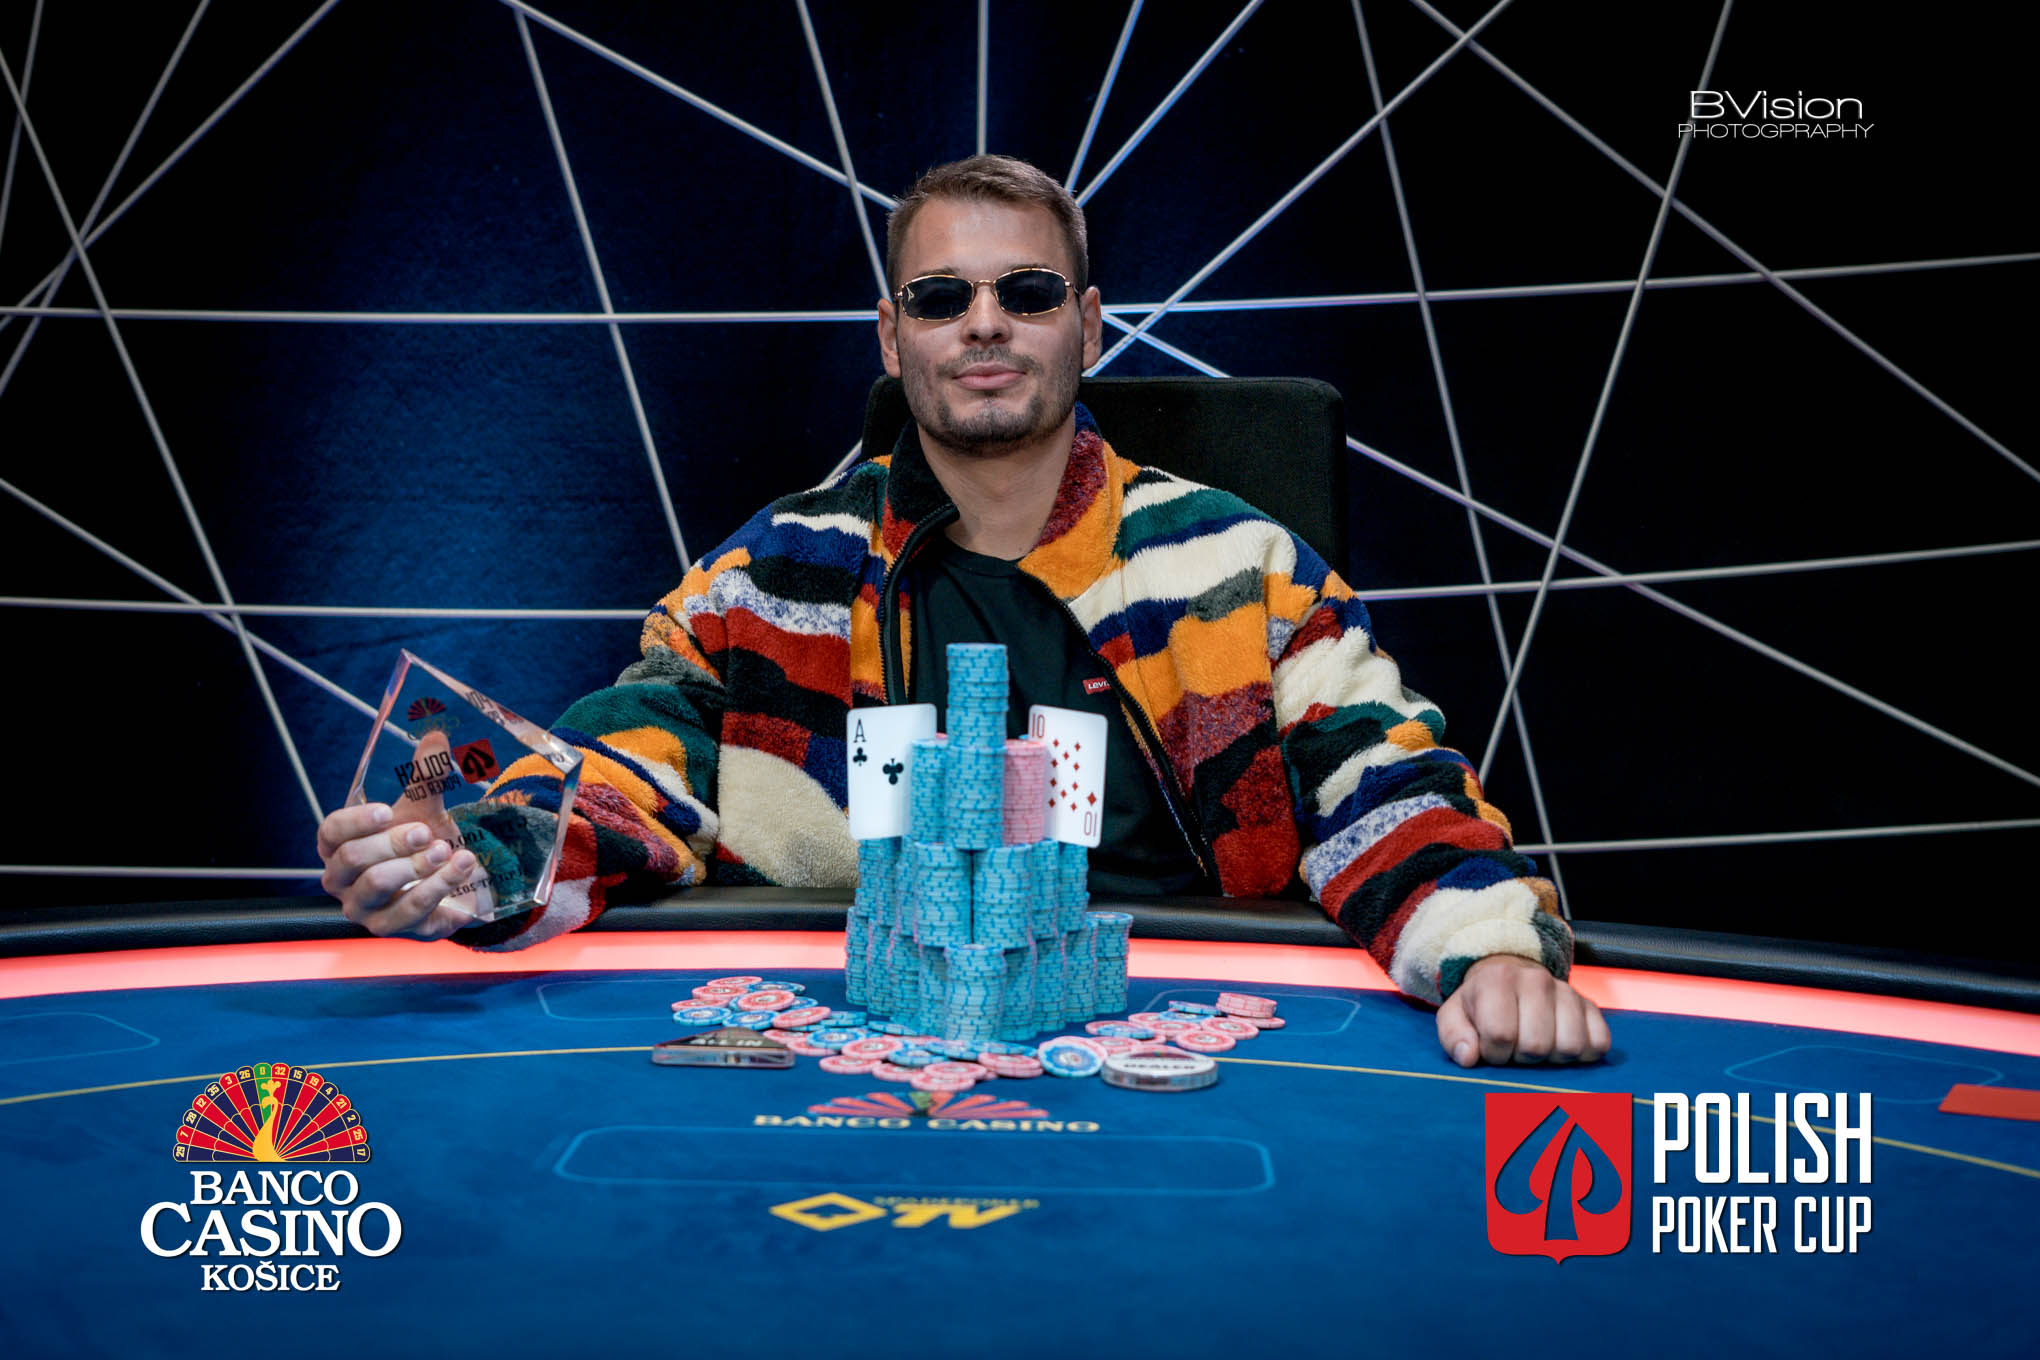 Titul Polish Poker Cup zostáva doma – šampiónom sa stal Miroslav Varga, ktorý premenil 100€ na 20.200€!